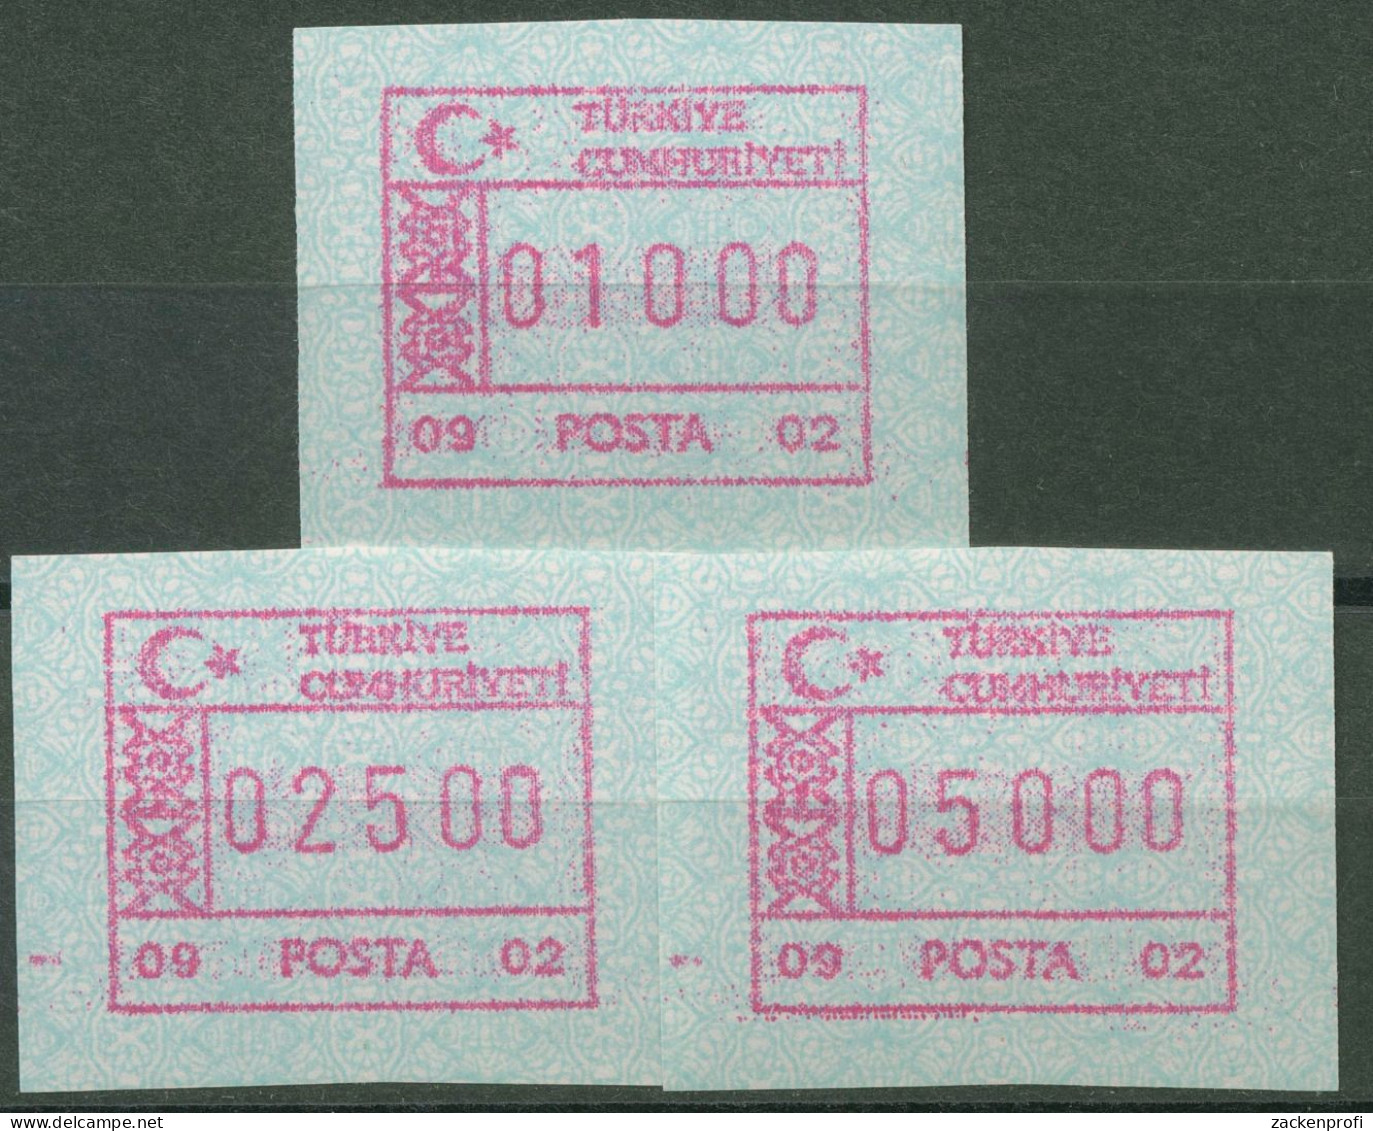 Türkei ATM 1992 Ornamente Automat 09 02, Satz 3 Werte ATM 2.6 S Postfrisch - Automatenmarken